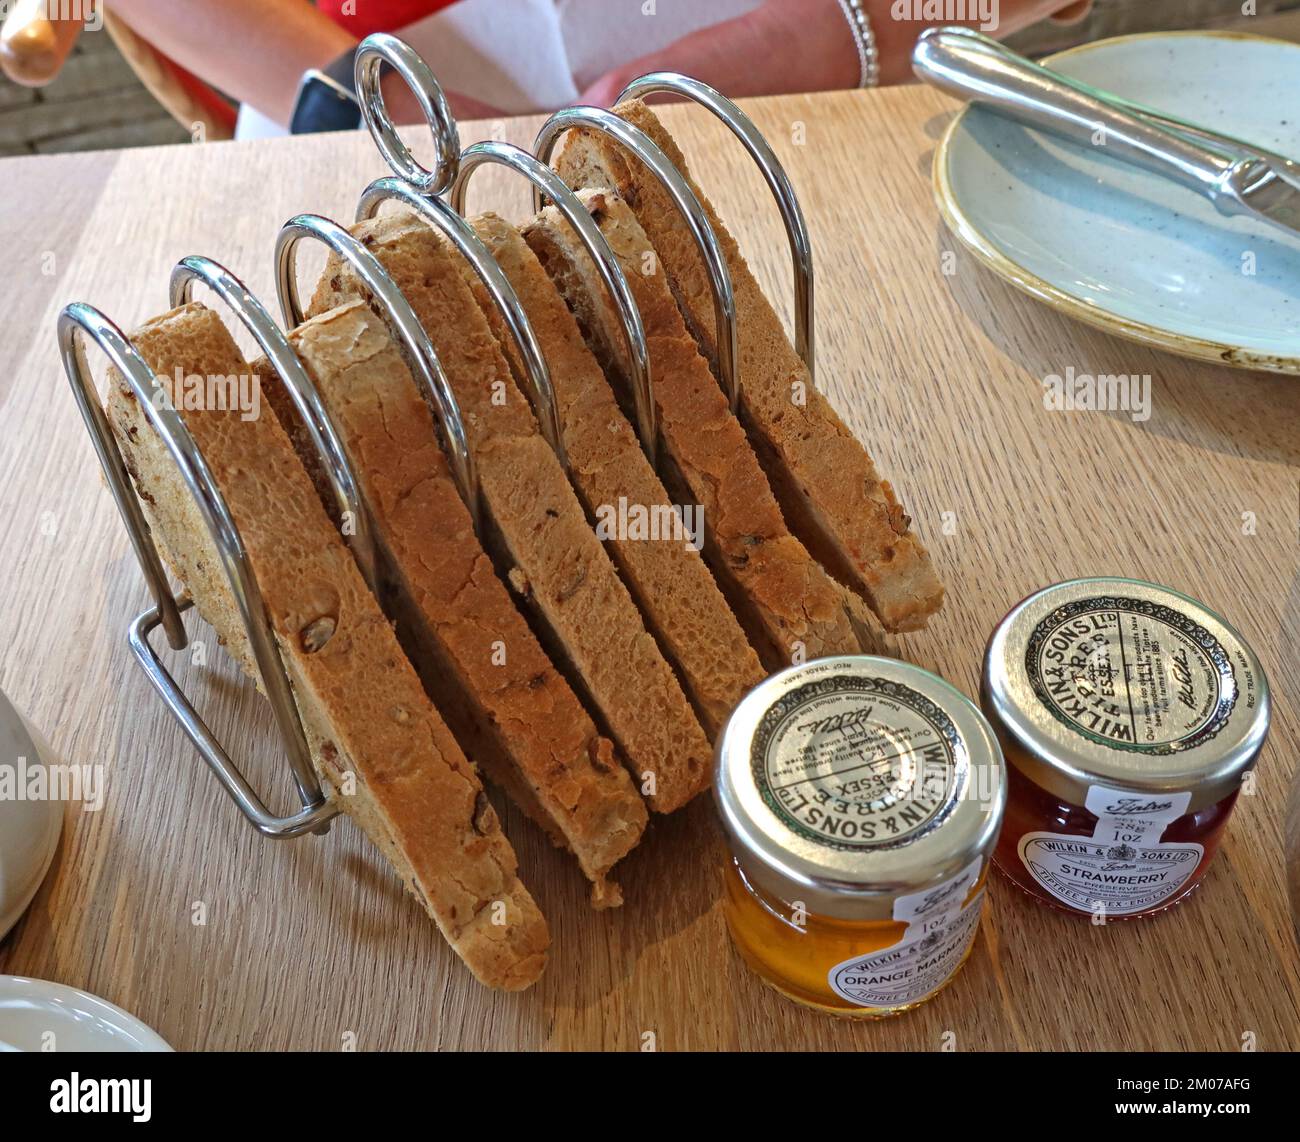 Rack di toast per la colazione, con vasetti di pippee di marmellata d'arance e confettura di fragole Foto Stock